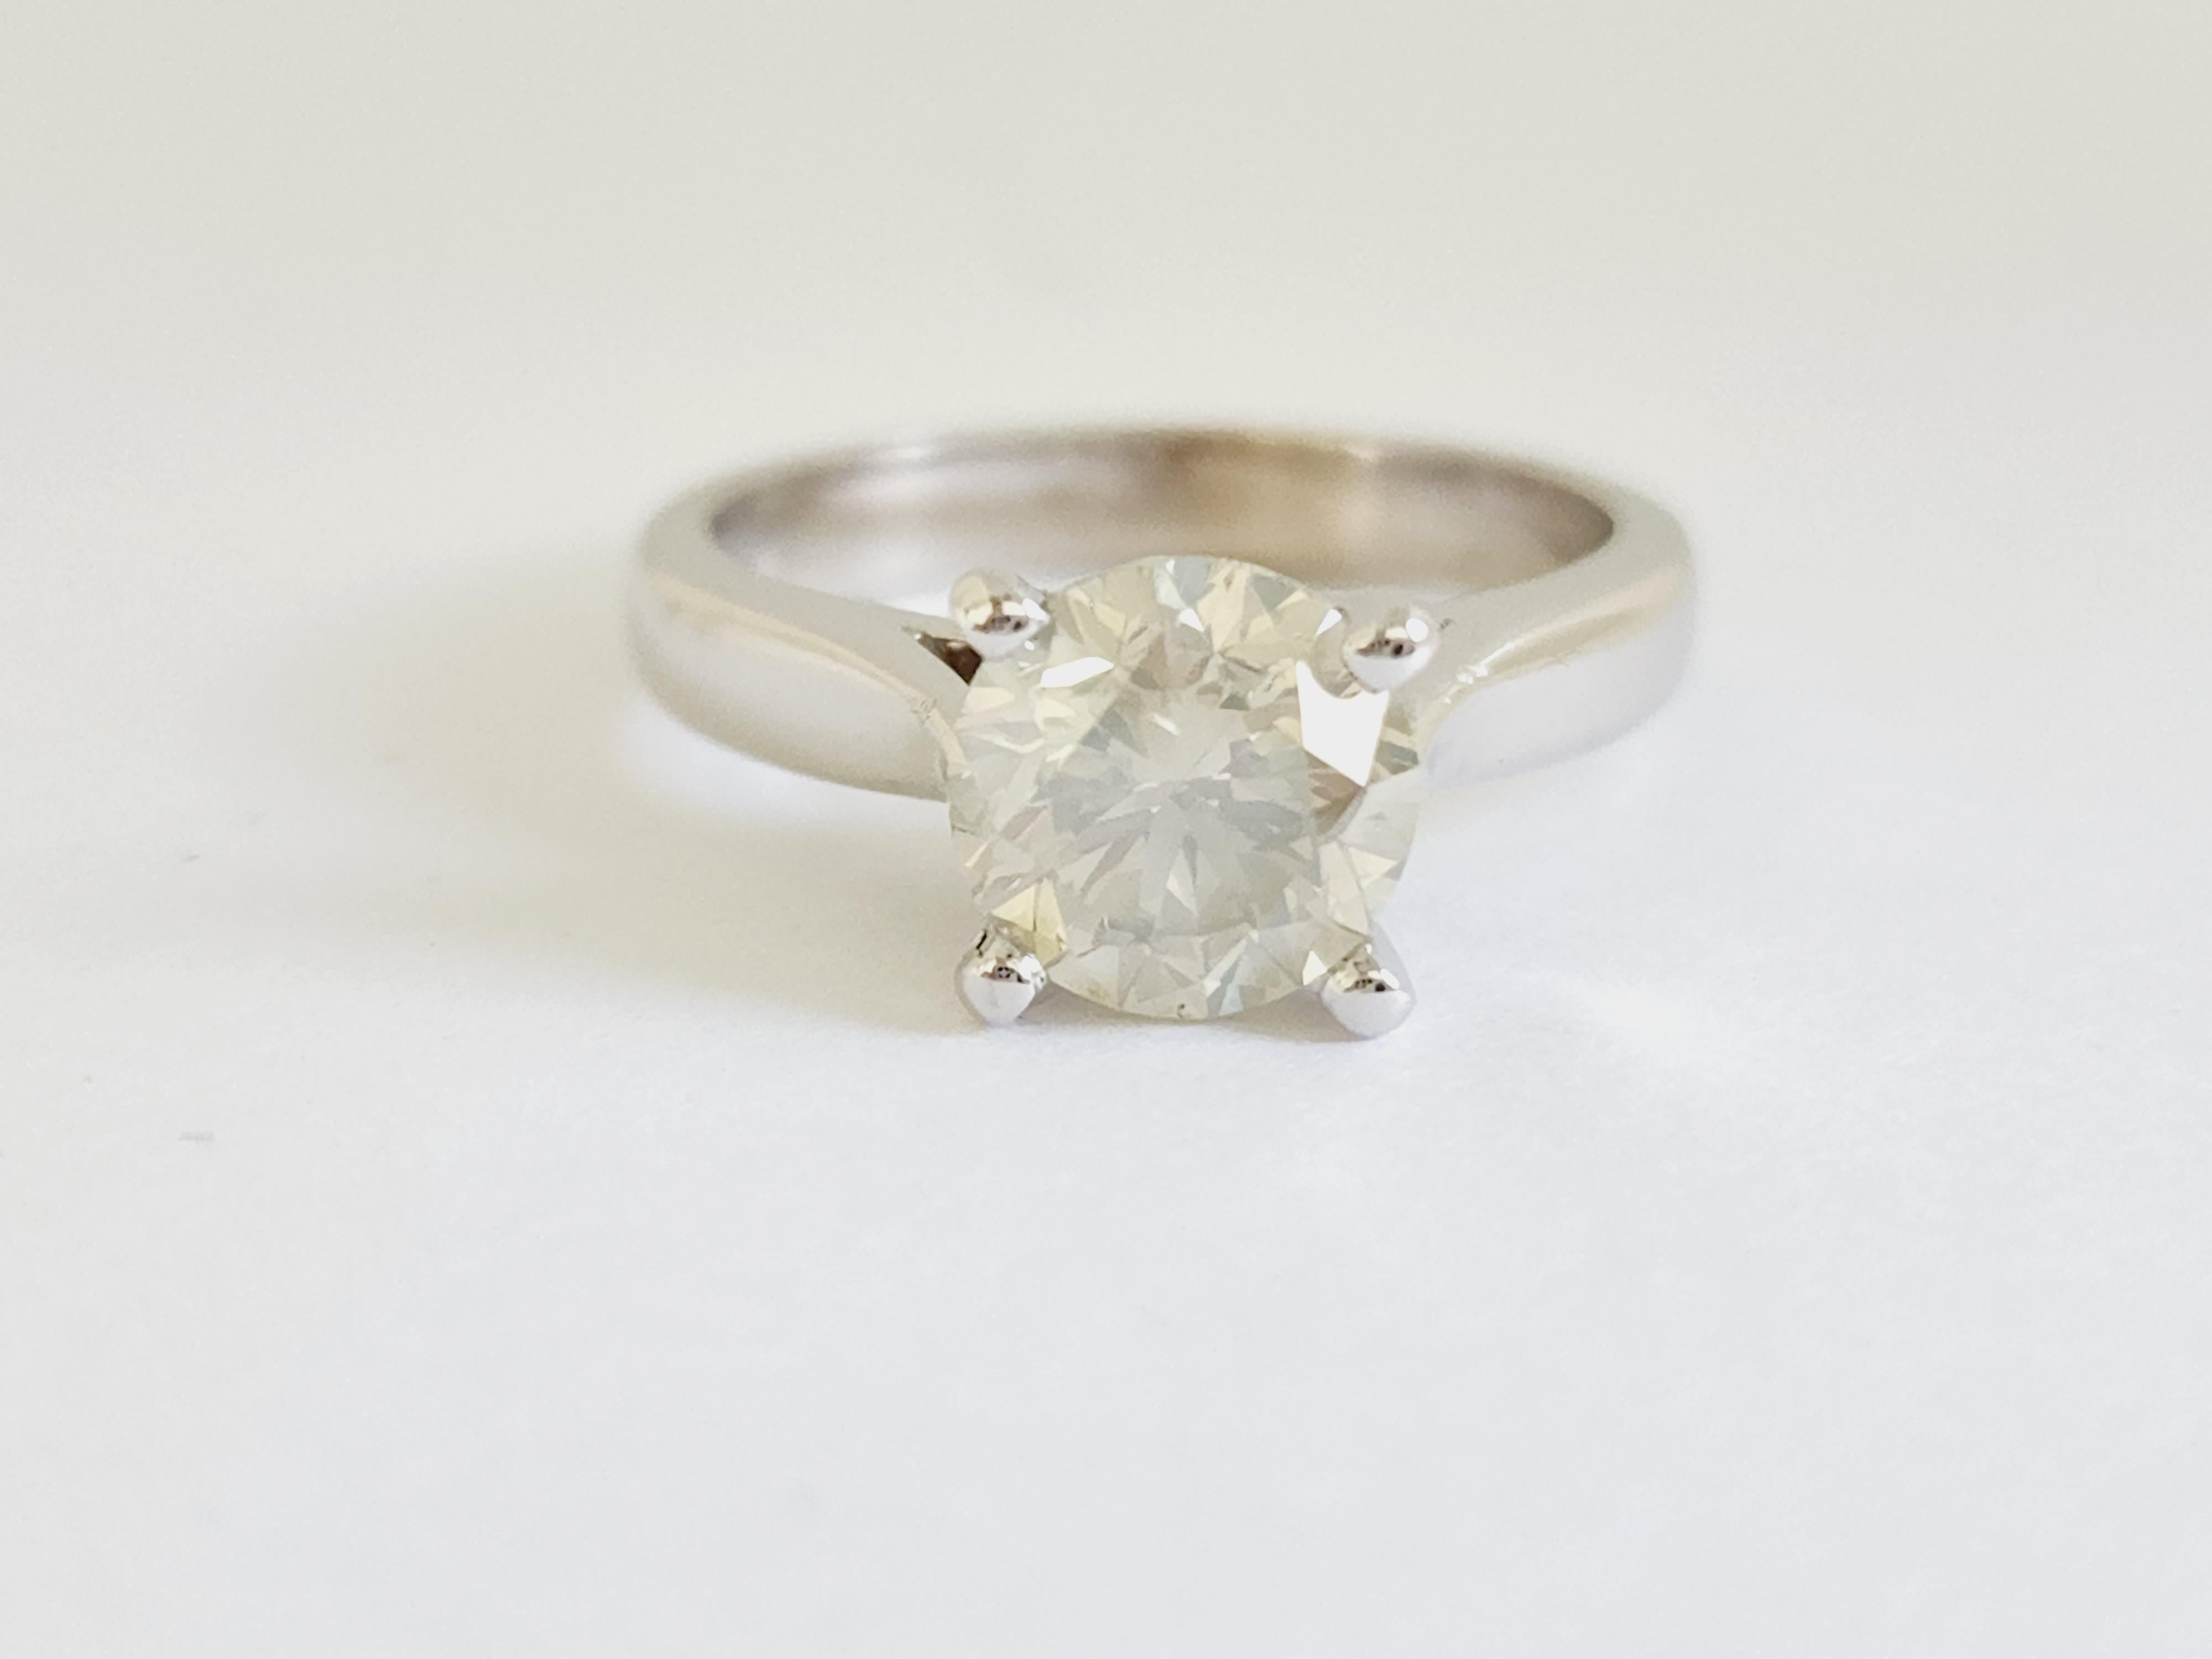 Natural GIA 2.01 Carat Fancy Light Grayish Greenish Yellow Round Diamond Ring 14 Karat White Gold. Set on 4-prong 14K white gold ring.
Ring size: 6.5